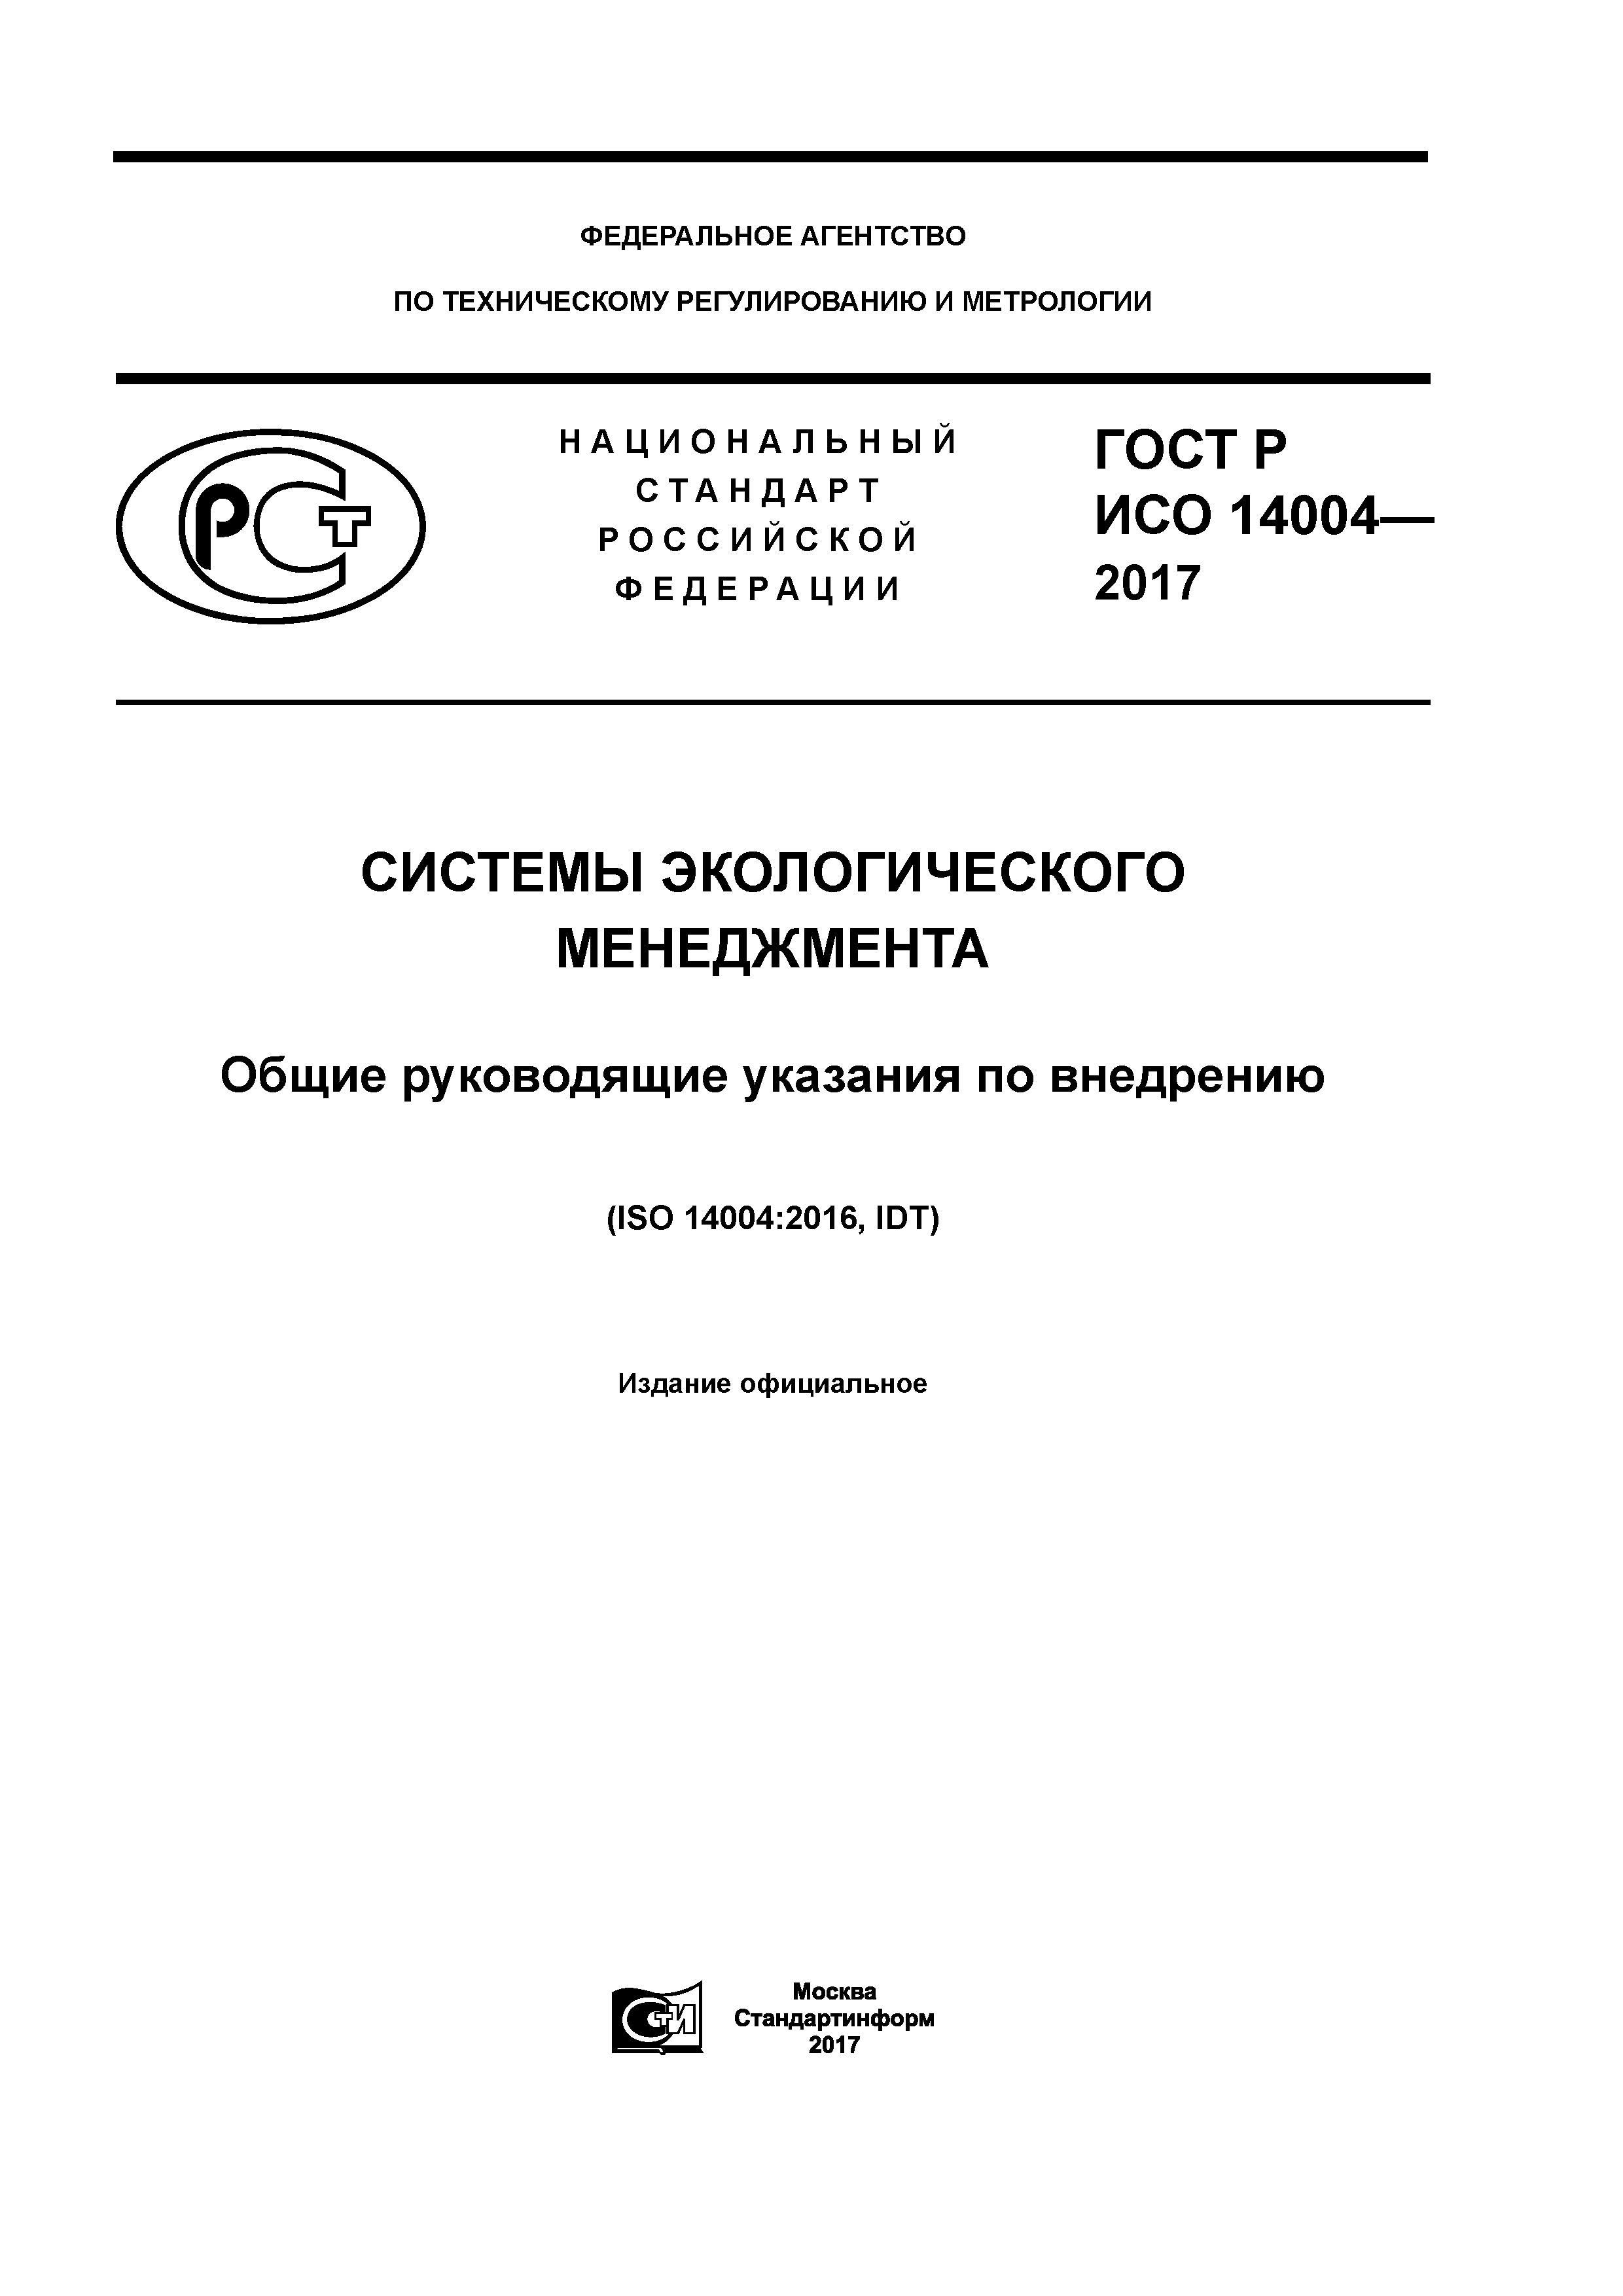 ГОСТ Р ИСО 14004-2017